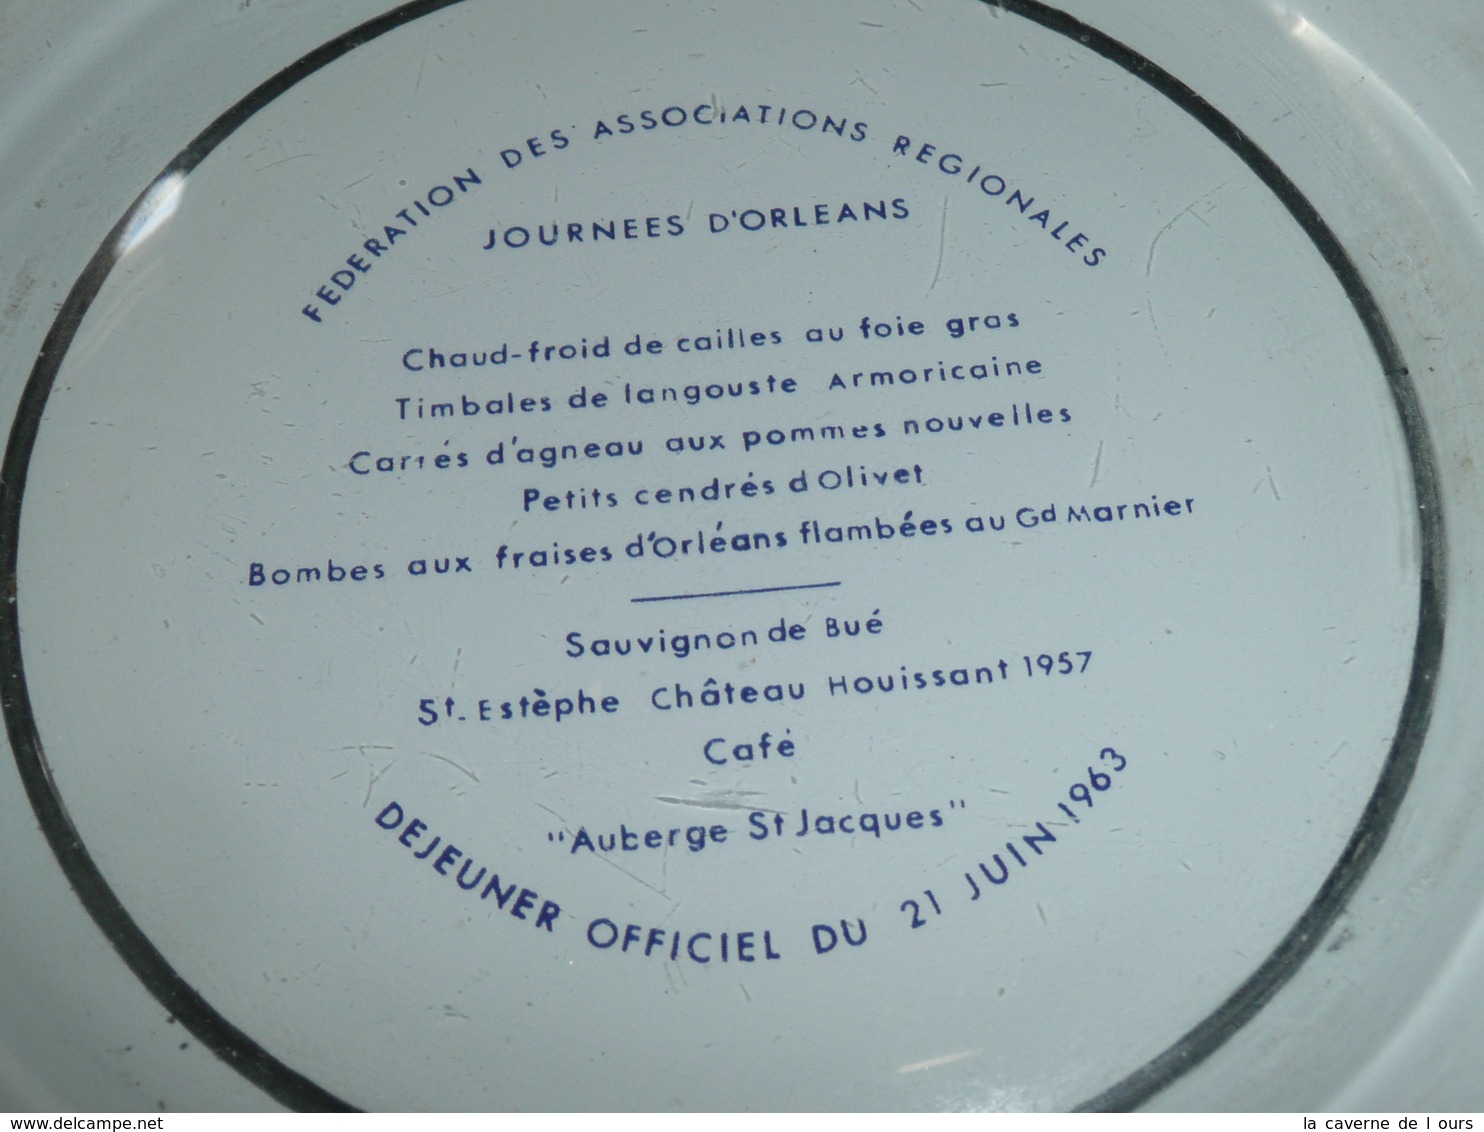 Rare Soucoupe Ramasse-monnaie En Verre 1963, Fédé Asso Régionales Journées D'Orléans, 1963, Menu Auberge St-Jacques - Obj. 'Remember Of'